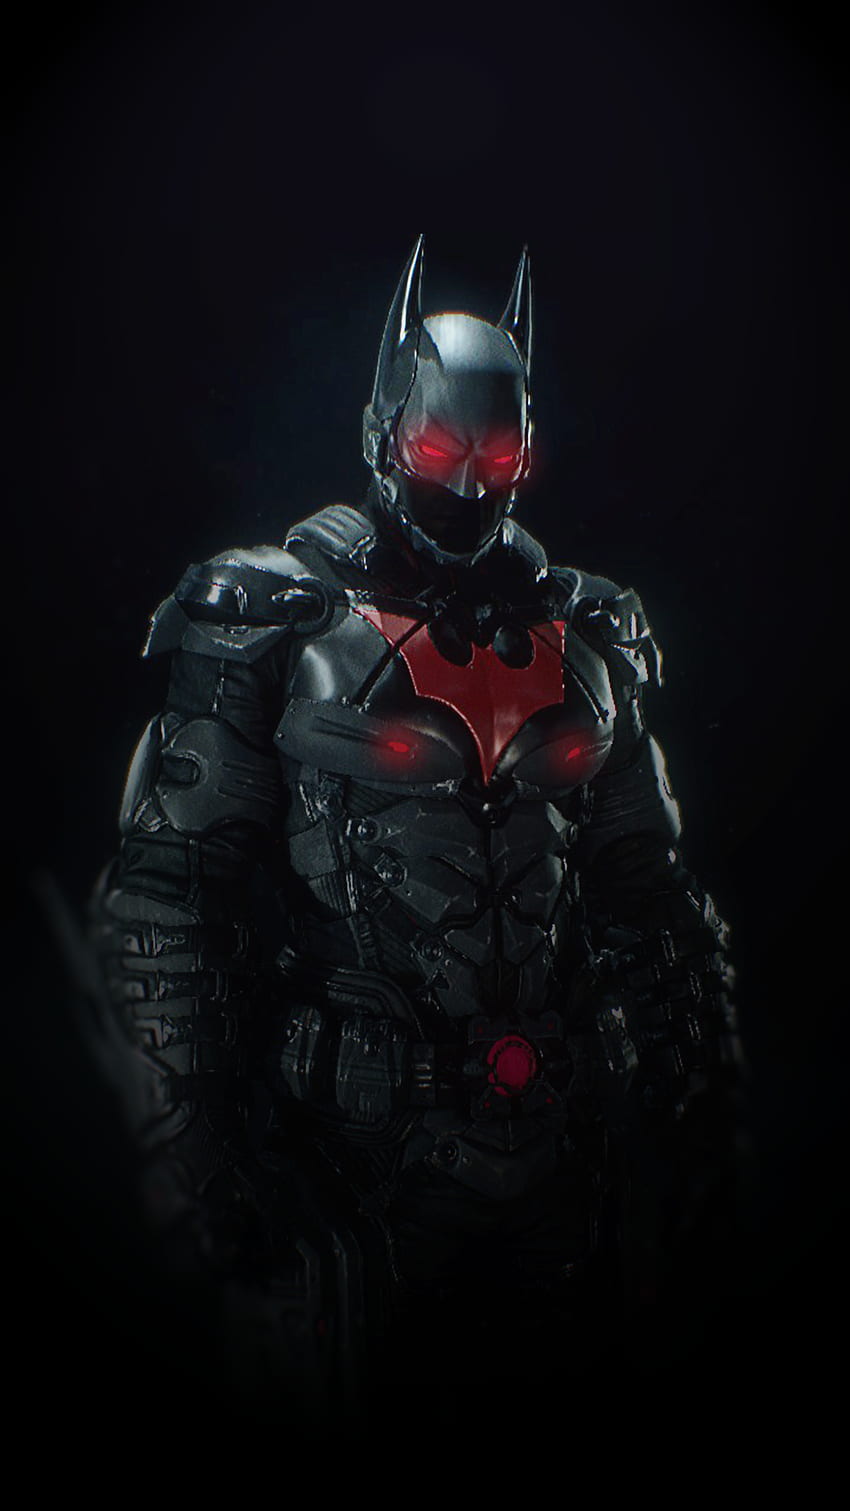 Batman Arkham Knight Suit: Batman Beyond Skin. Um feito por mim para smartphones. Batman Arkham Knight, Batman Arkham Knight, Batman Gotham Knight Papel de parede de celular HD